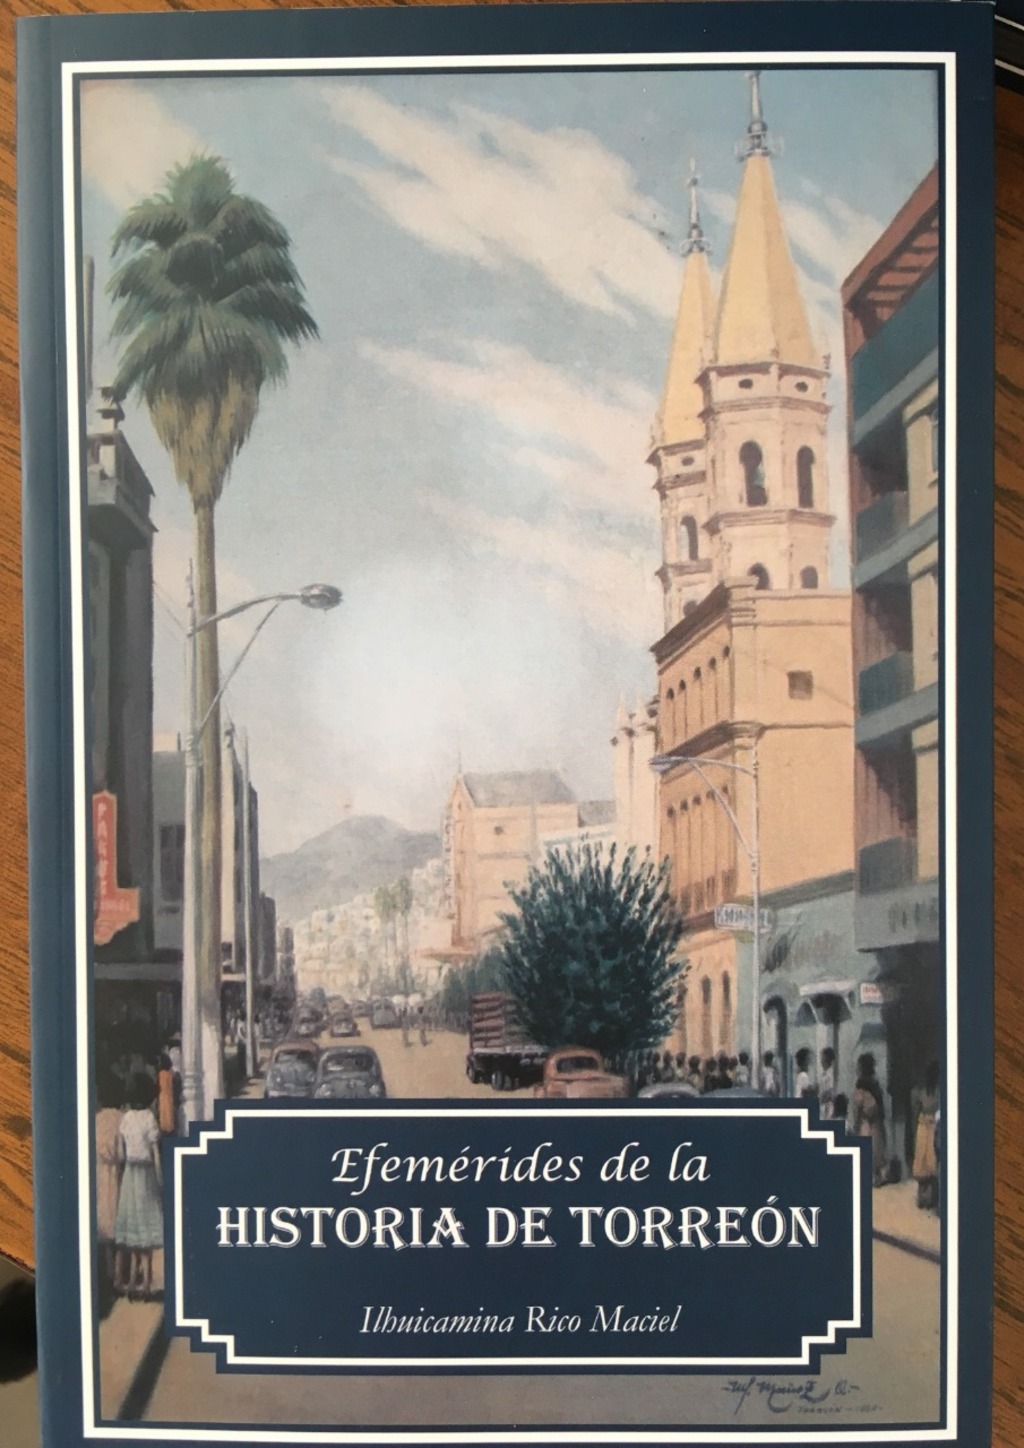 Historia. El libro aborda las fechas importantes desde la fundación de Rancho El Torreón hasta la actualidad. (CORTESÍA)